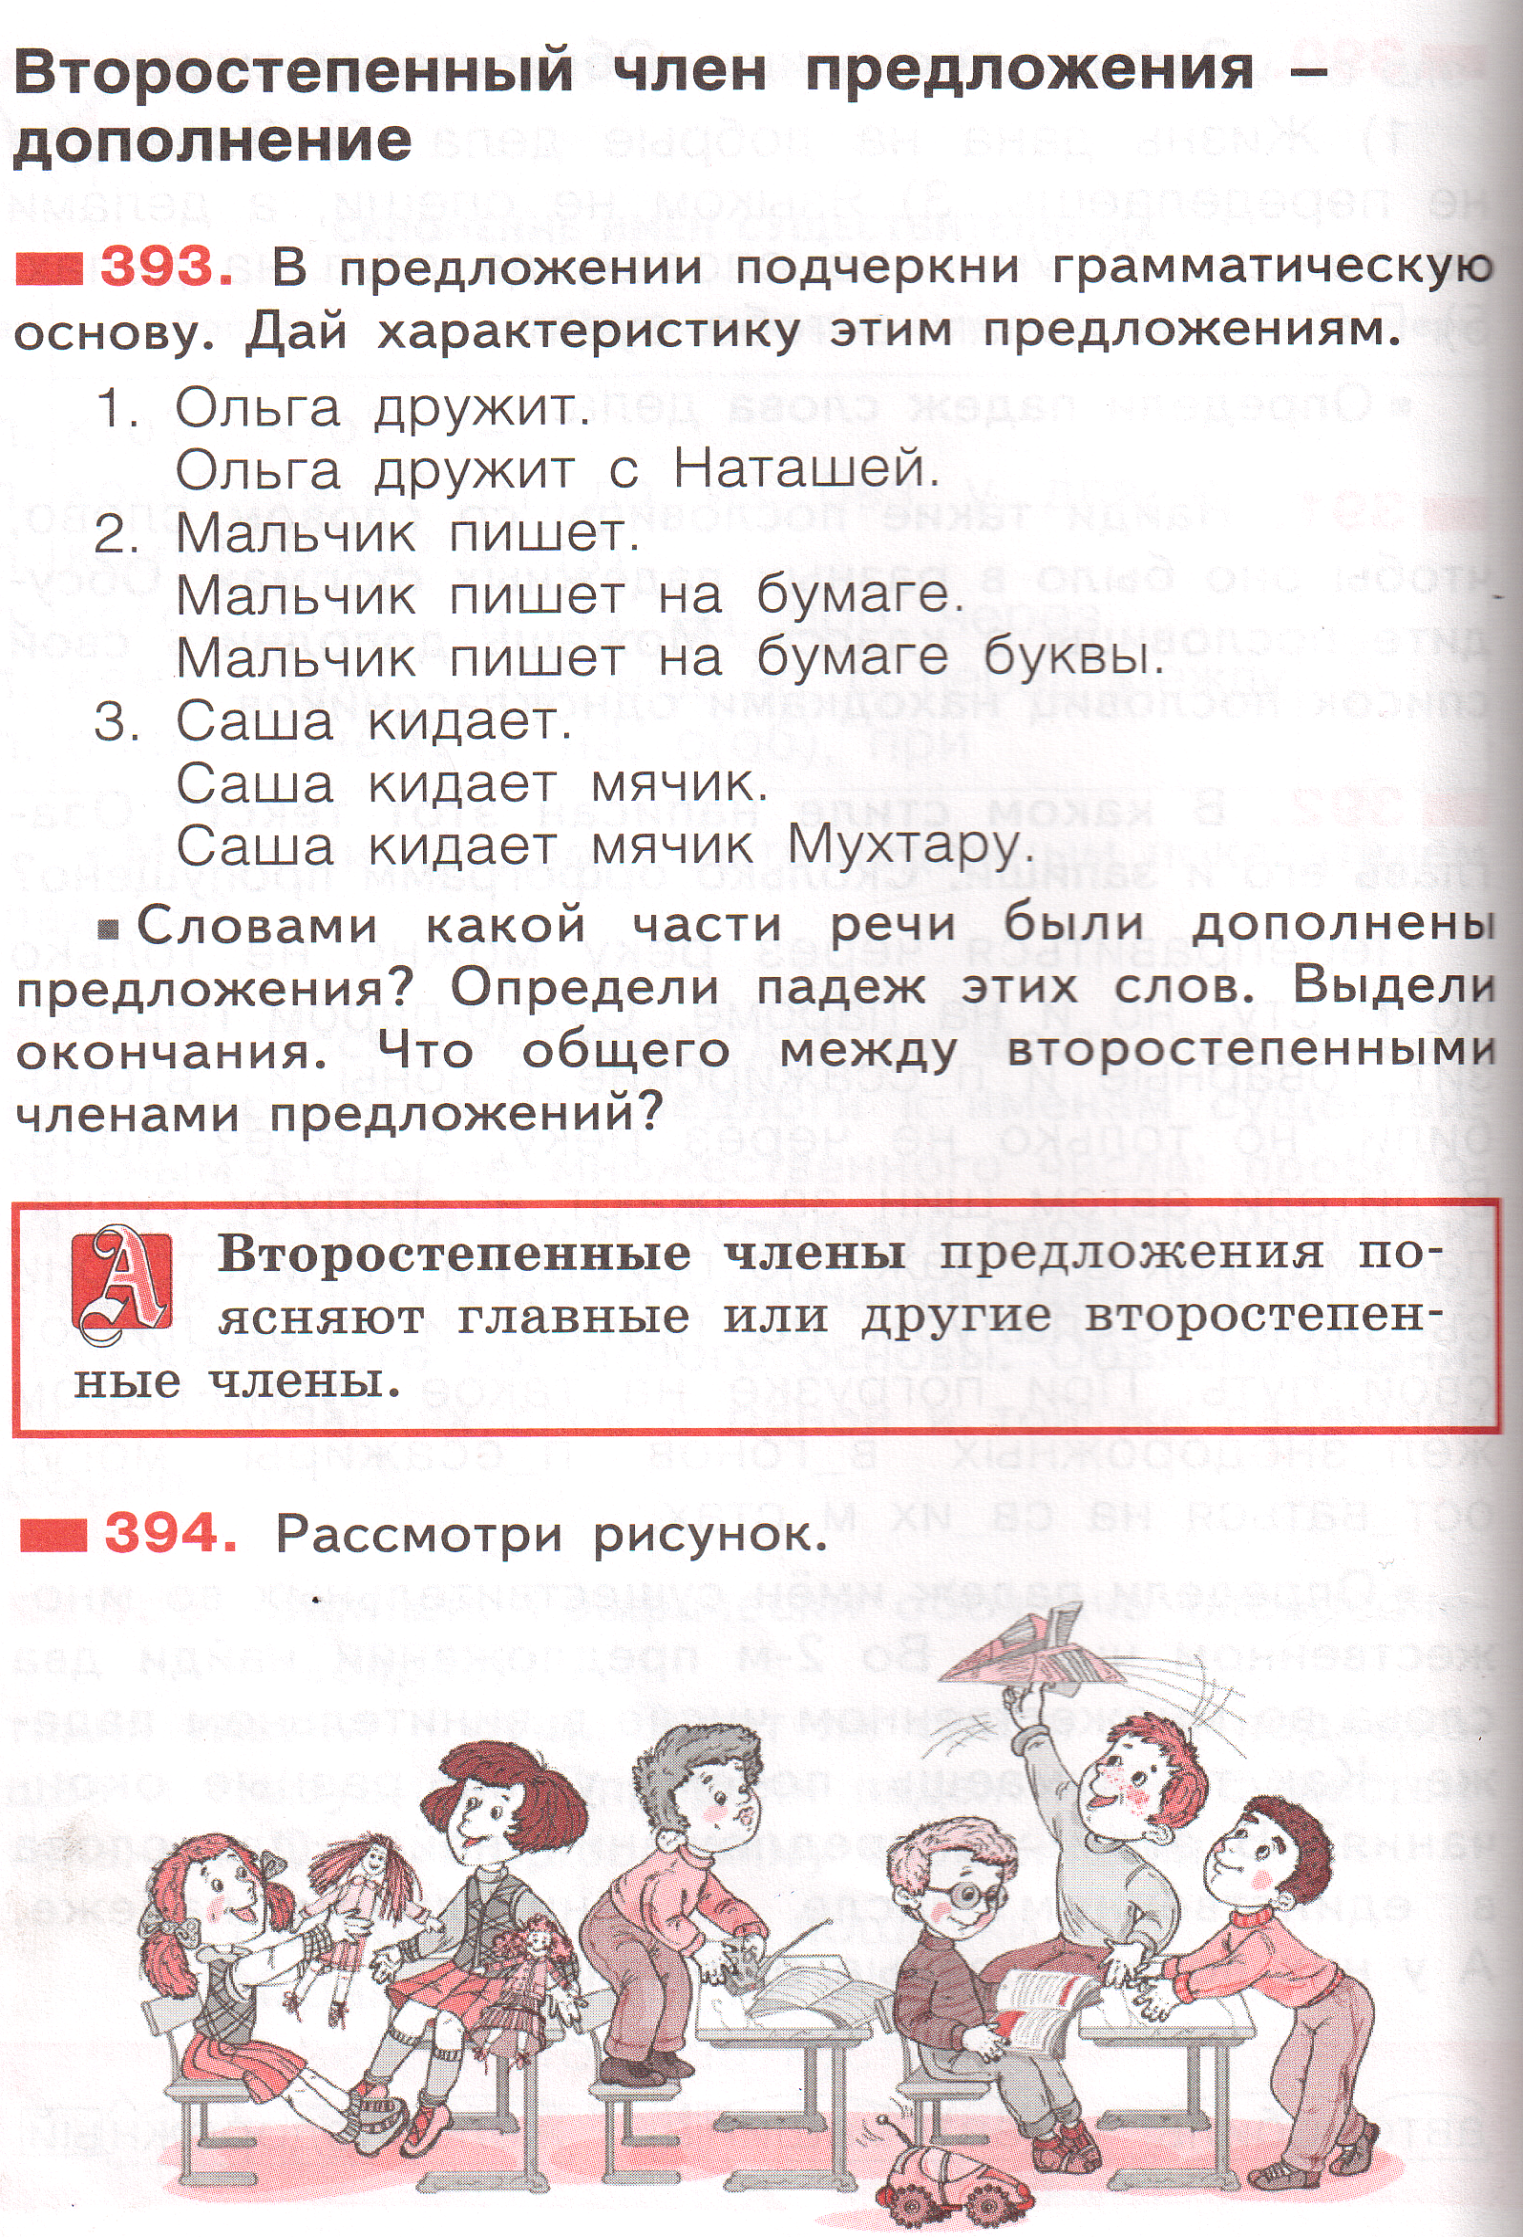 члены в русском языке фото 55